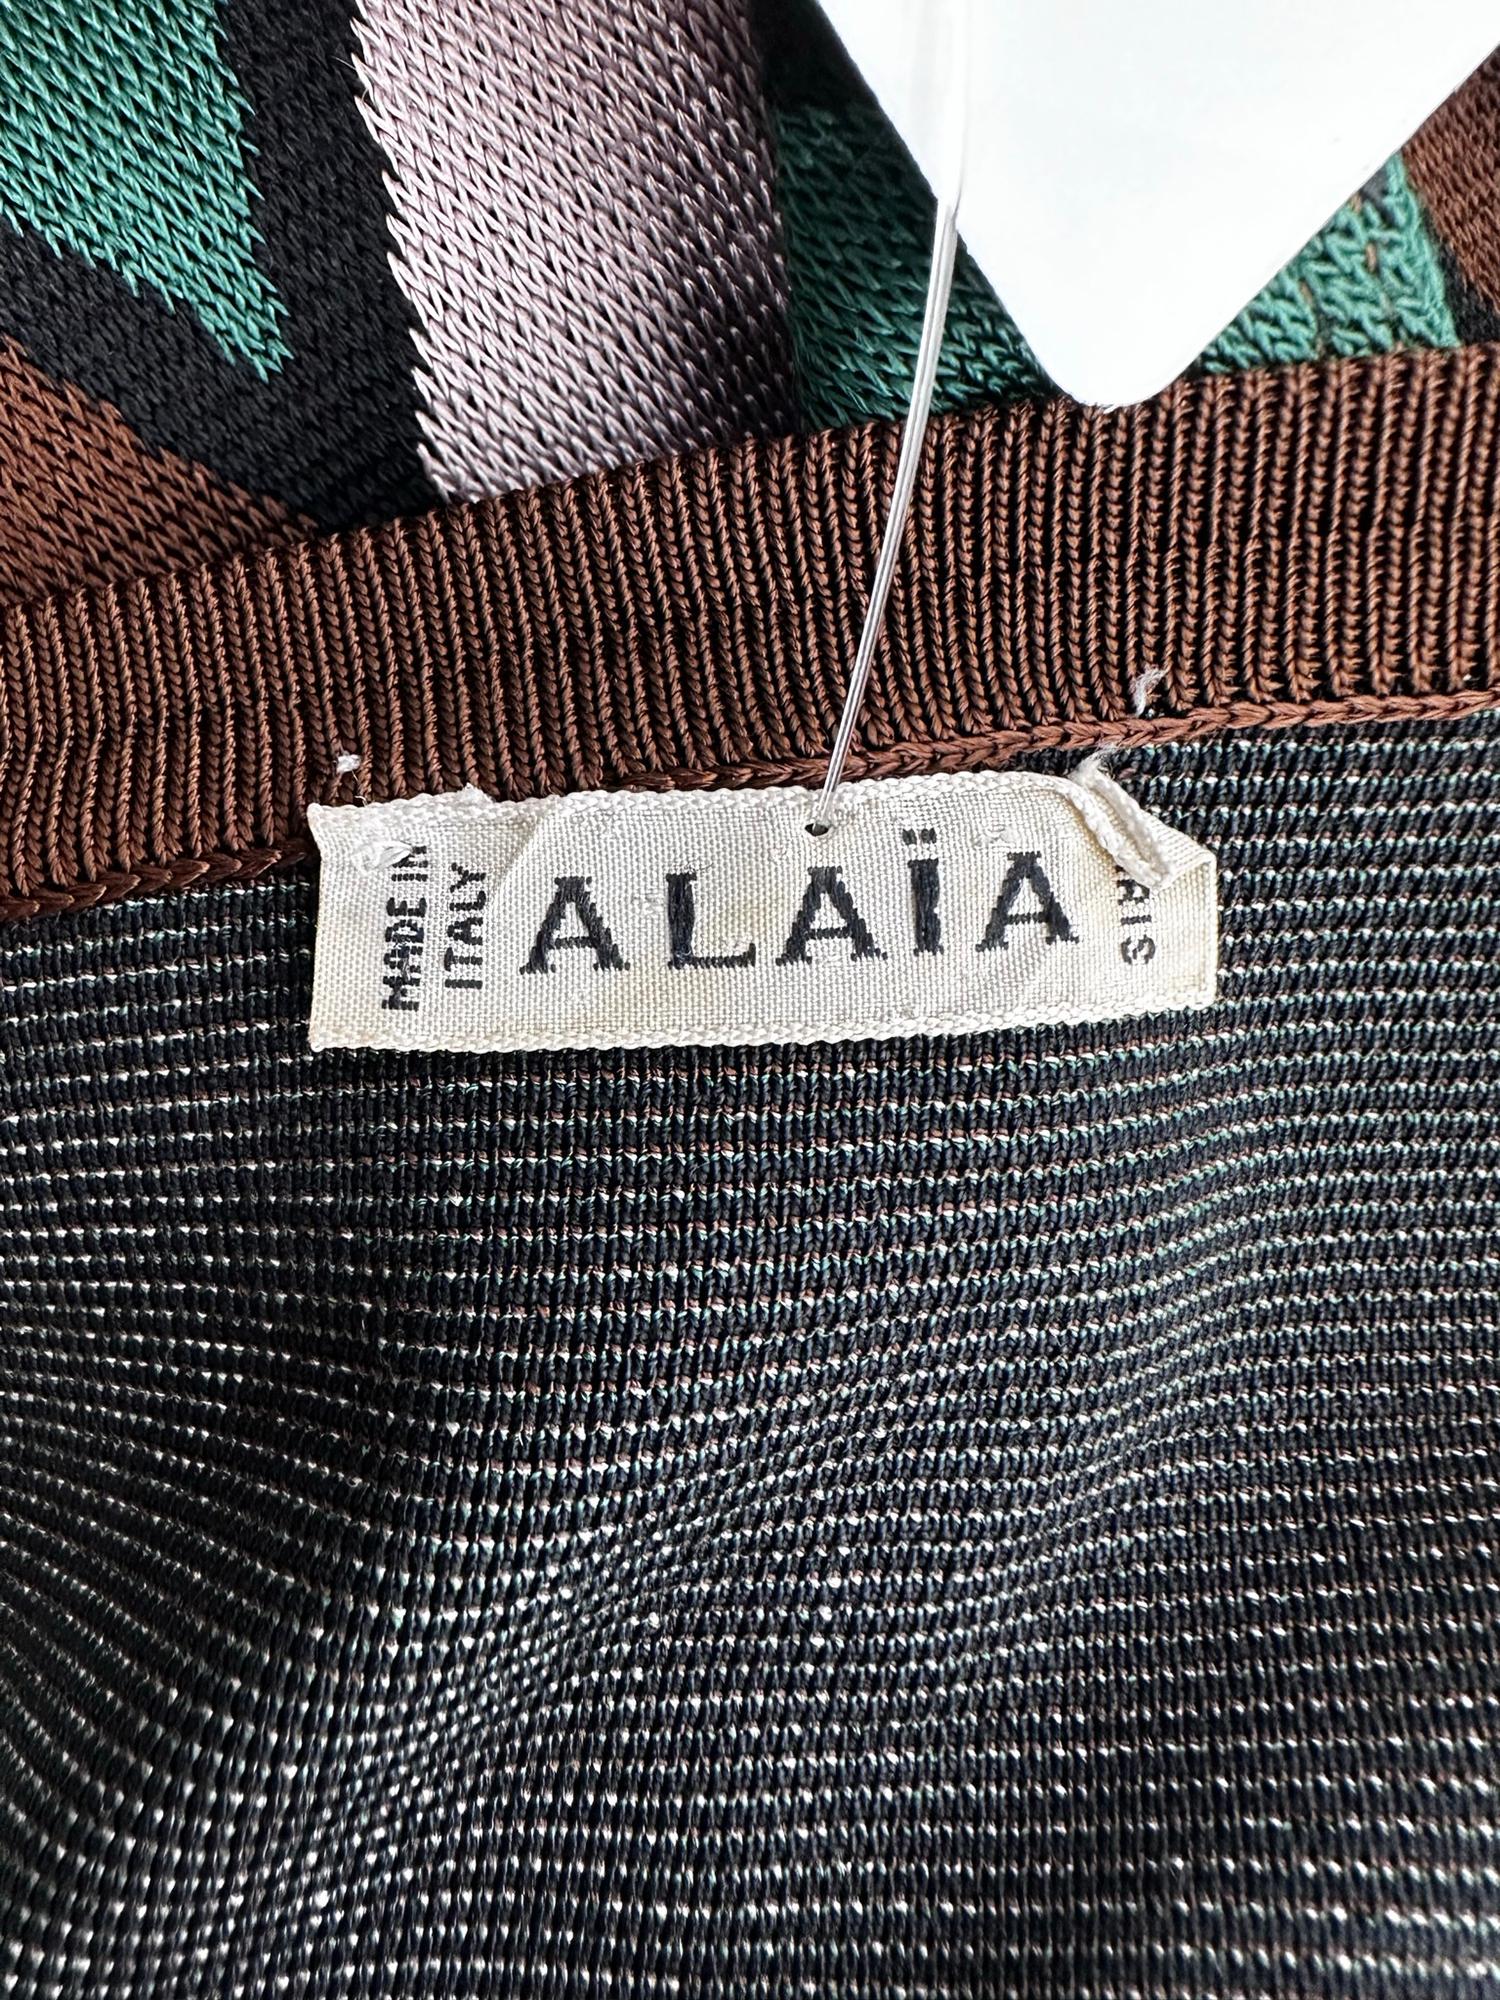 Azzedine Alaia Rare Fall 1992 Brown & Green Argyle Knit Body Con Dress Medium en vente 8